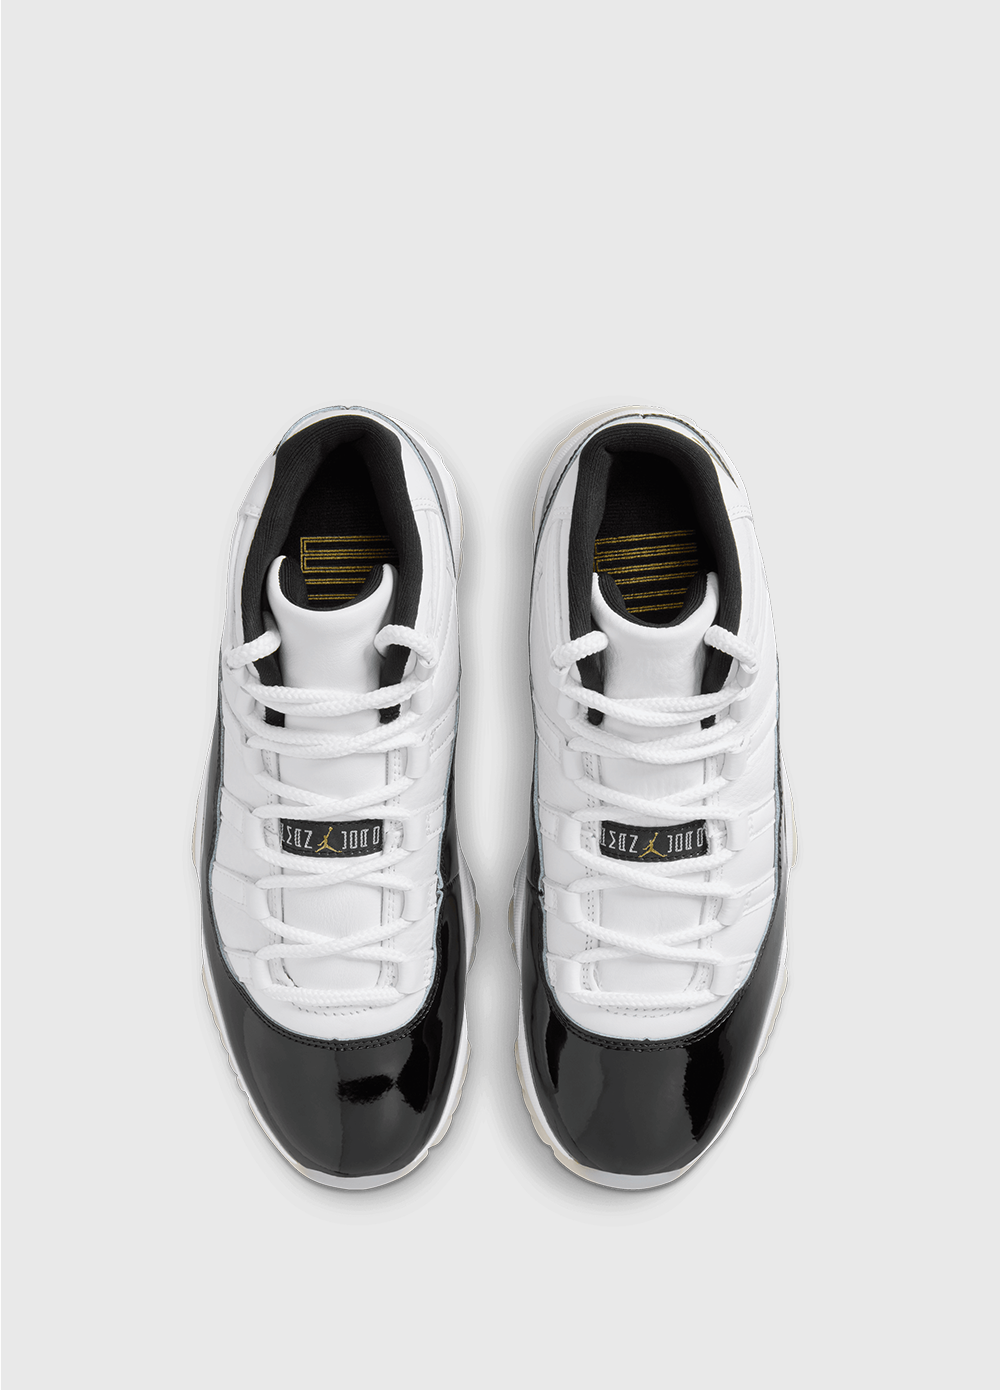 Air Jordan 11 Retro 'Gratitude' Sneakers